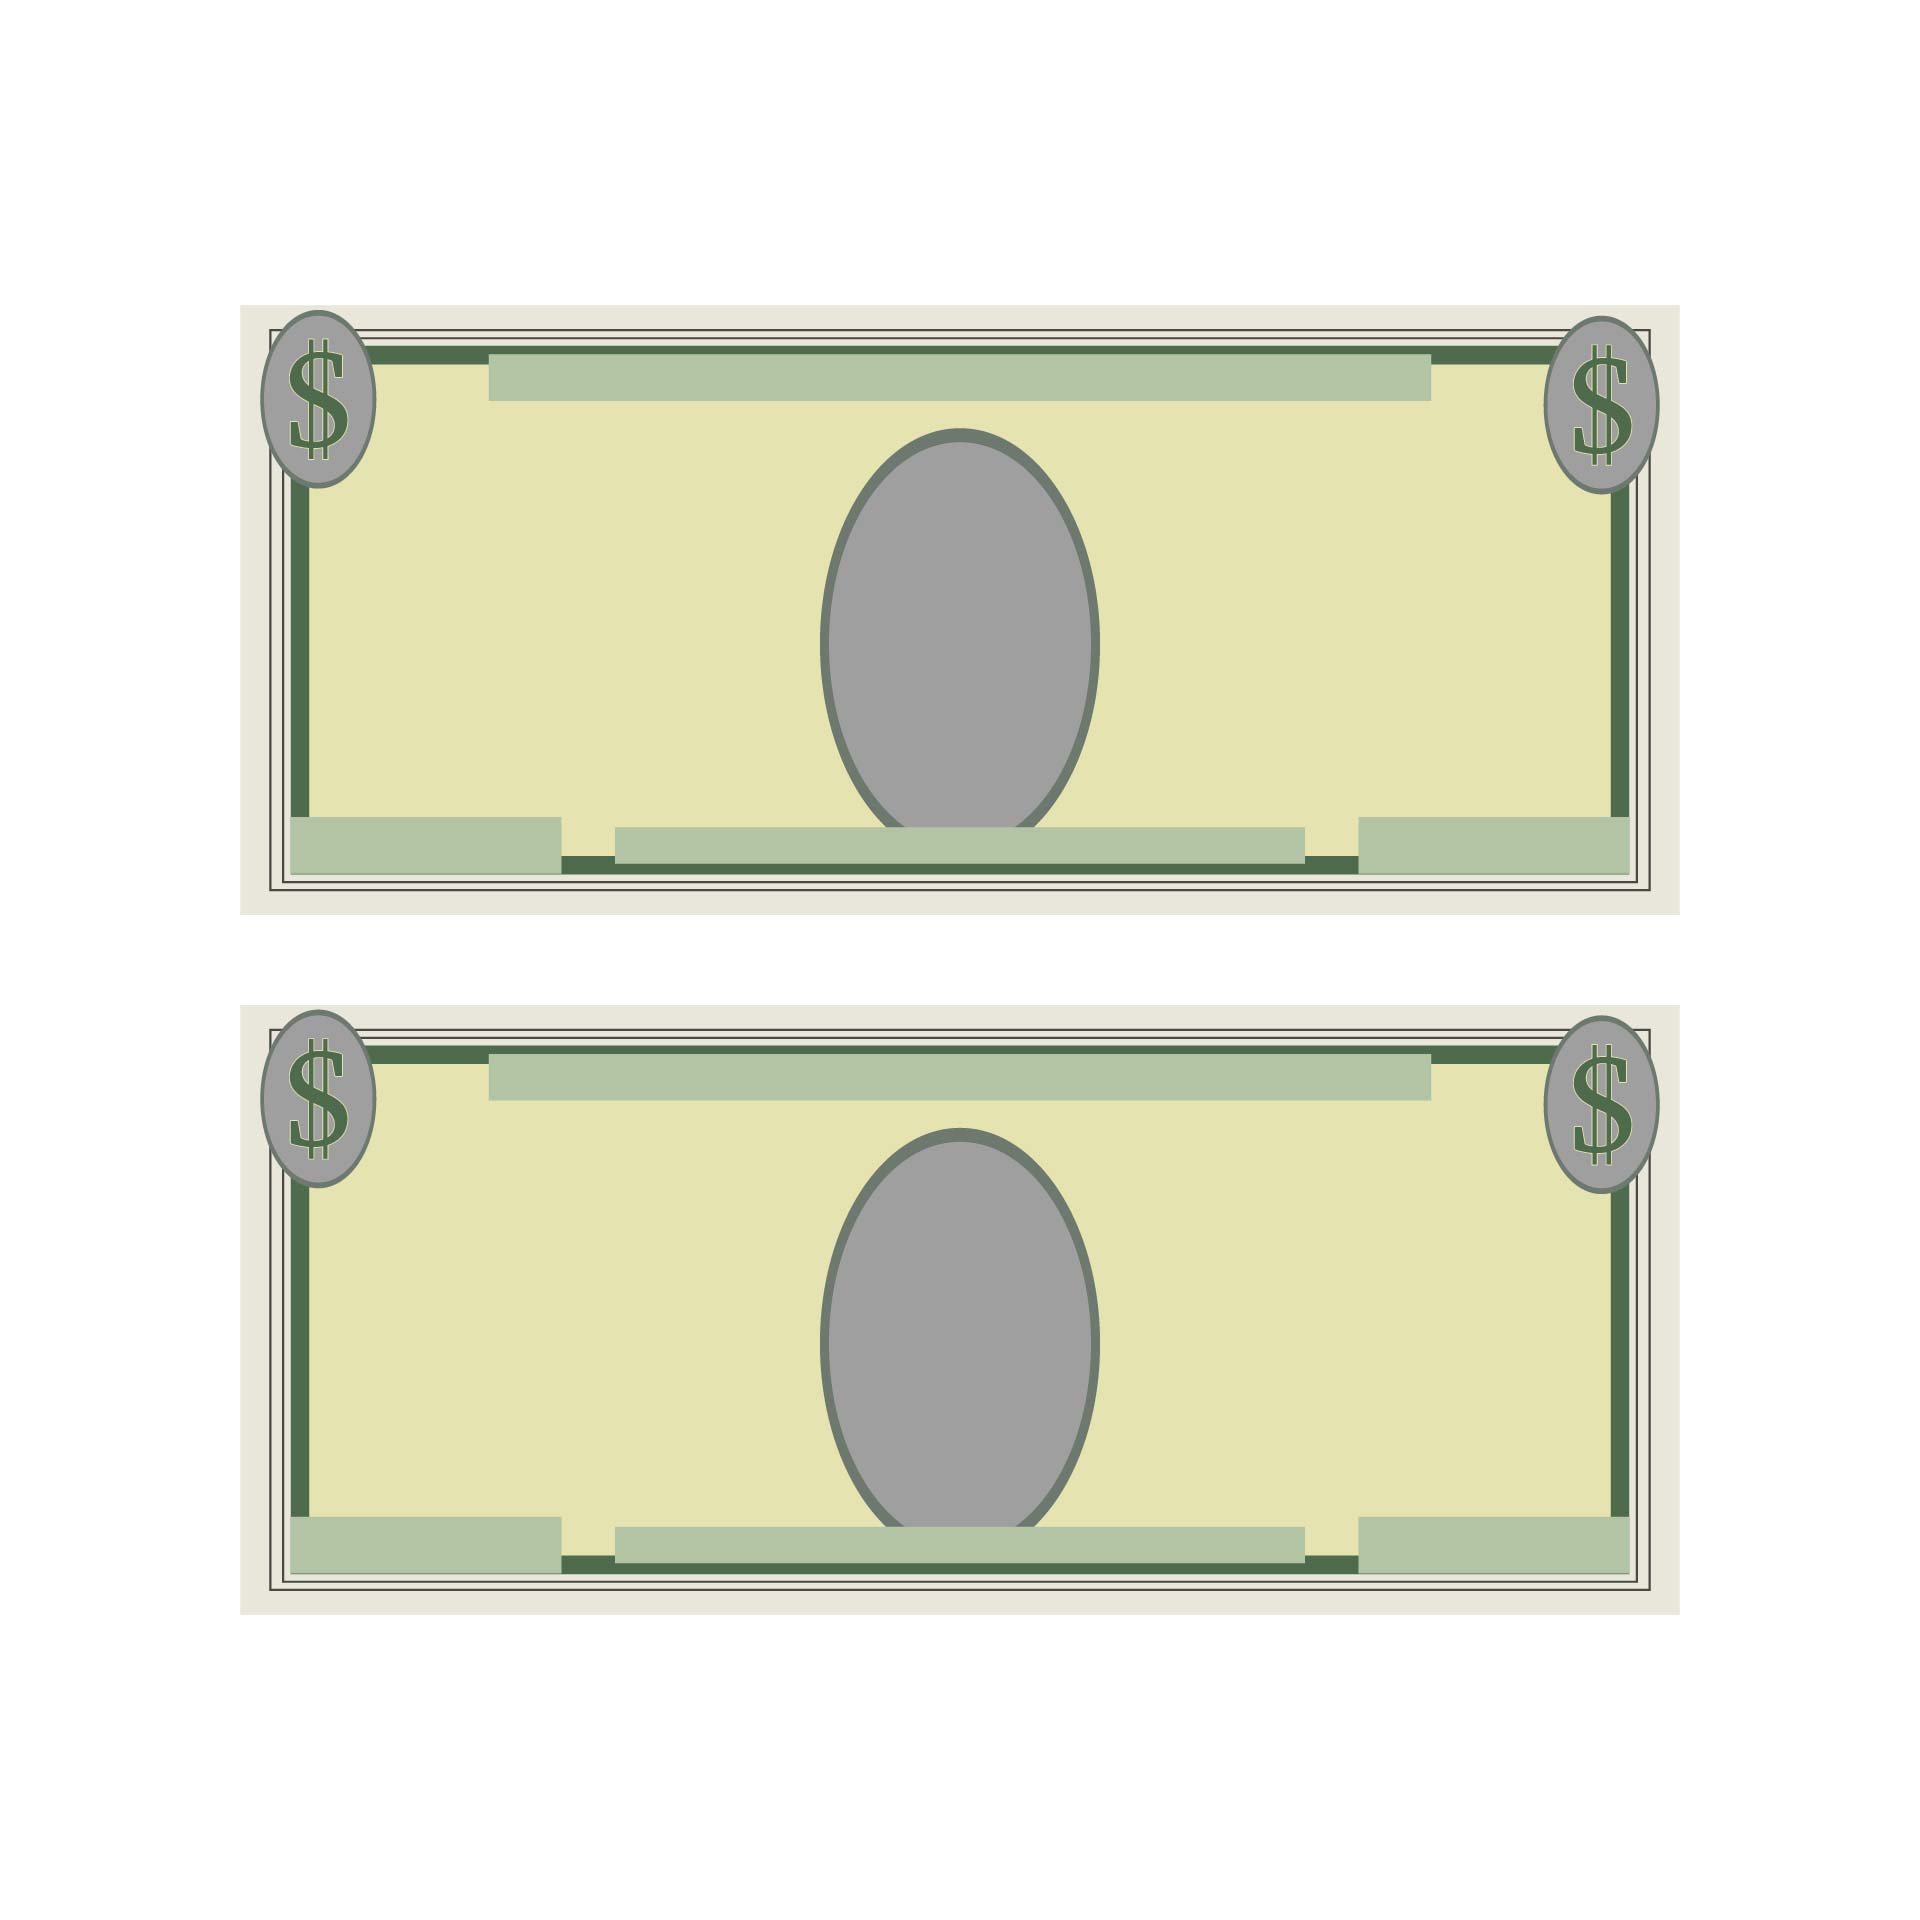 10 Best Fake Play Money Printable - printablee.com